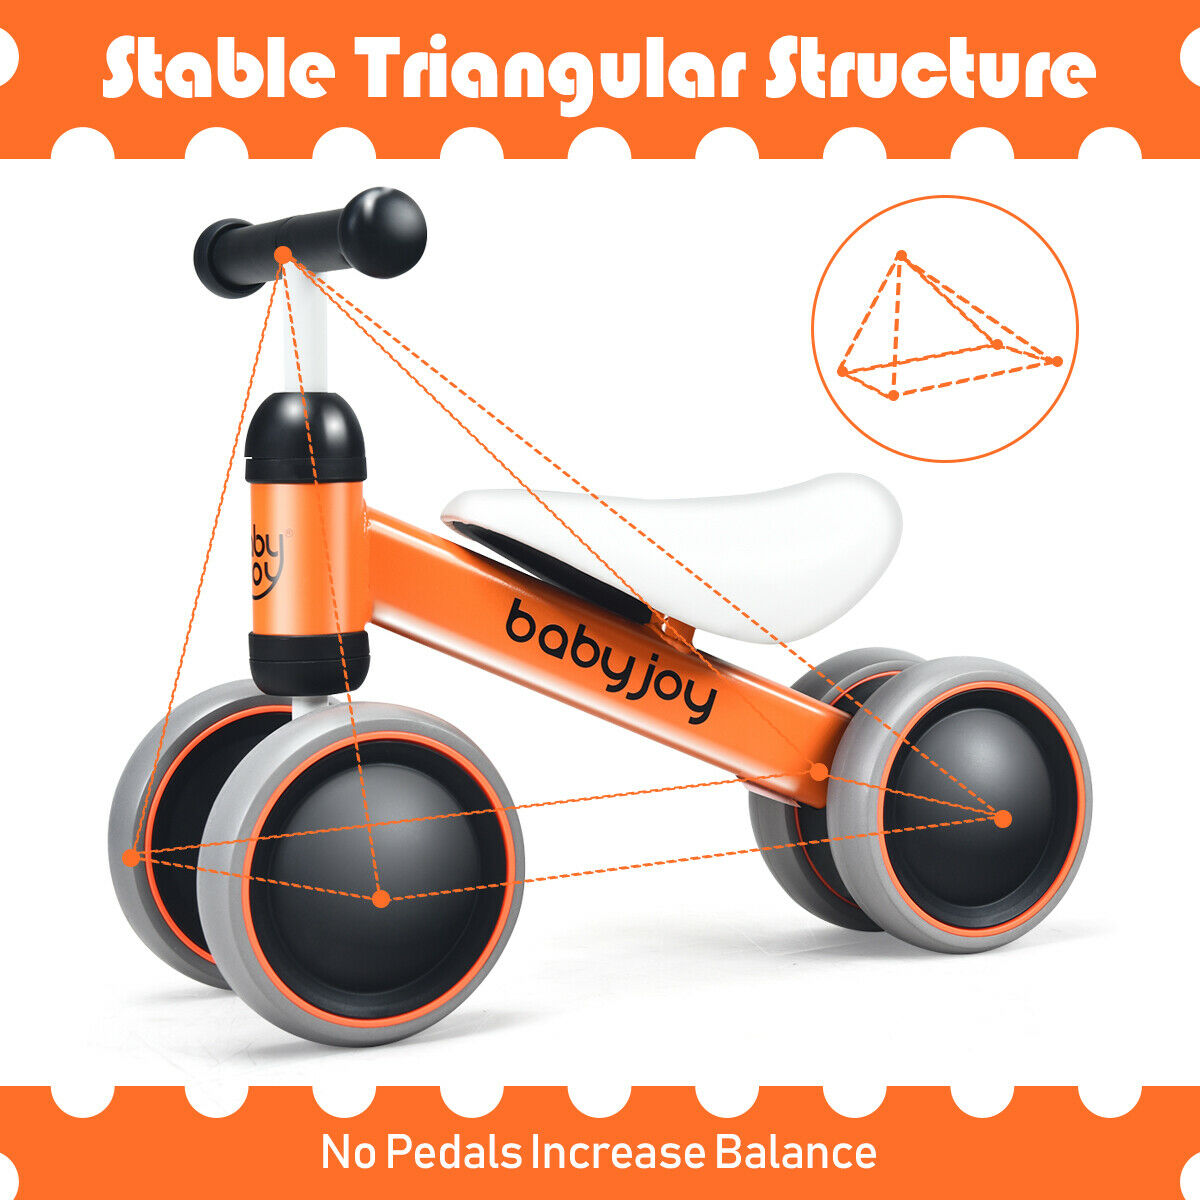 Babyjoy 4 Wheels Baby Balance Bike Children Walker No-Pedal Toddler Toys Rides Orange - image 5 of 10